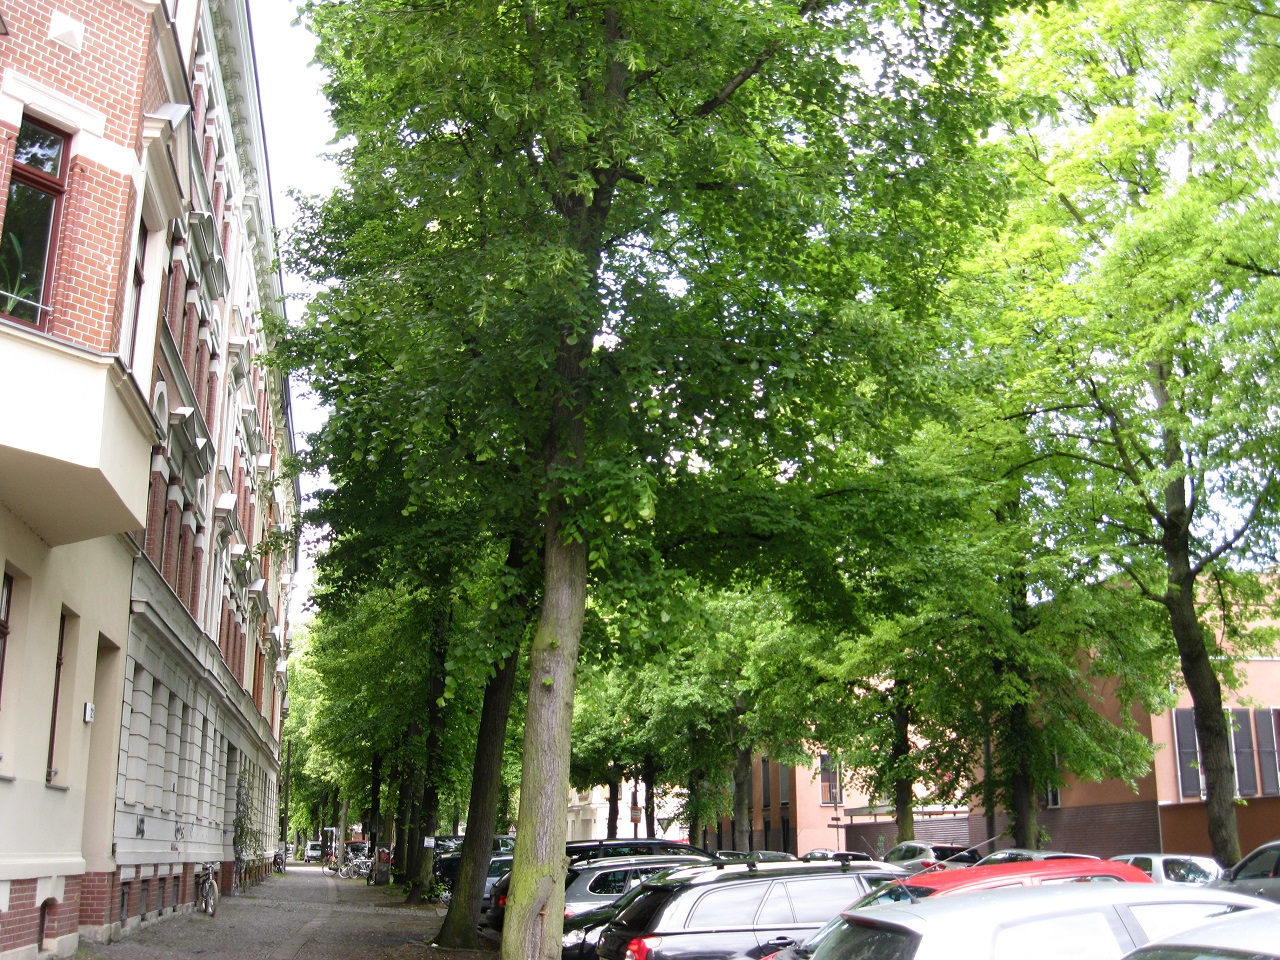 Straße mit alten Bäumen